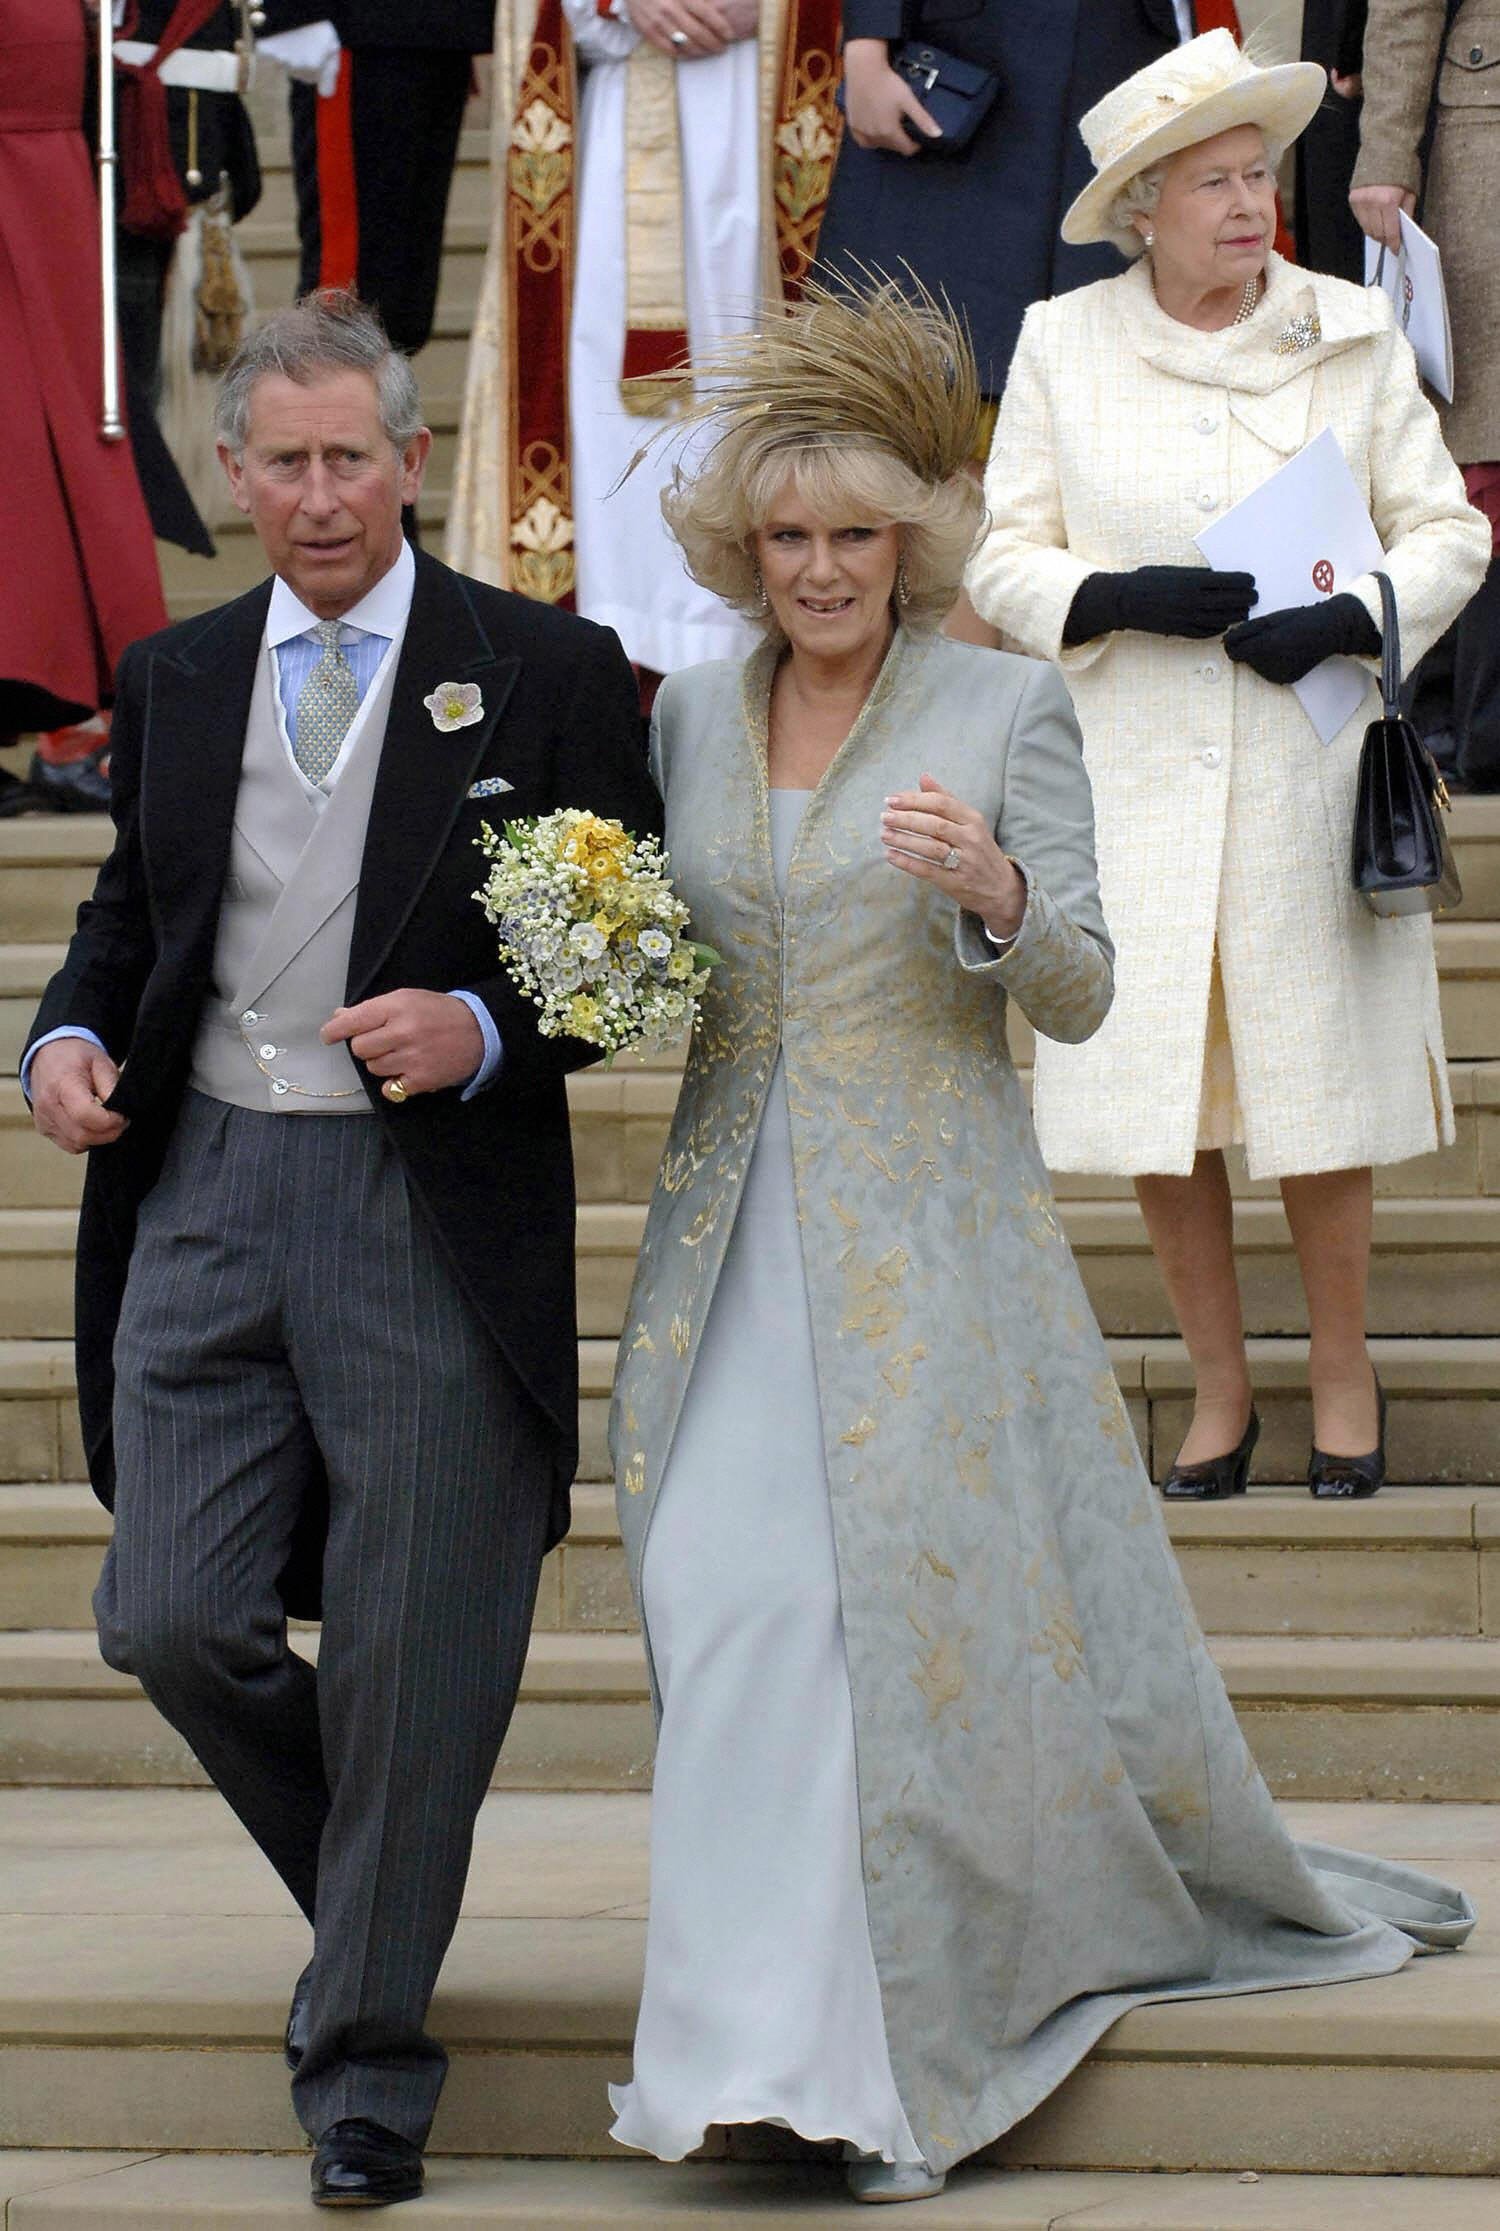 La reine Elizabeth II, photographiée derrière le prince Charles et son épouse Camilla, duchesse de Cornouailles, descendant les marches de la chapelle Saint-Georges à Windsor après la bénédiction par l'église de la cérémonie de leur mariage civil, le 9 avril 2005 | Source : Getty Images